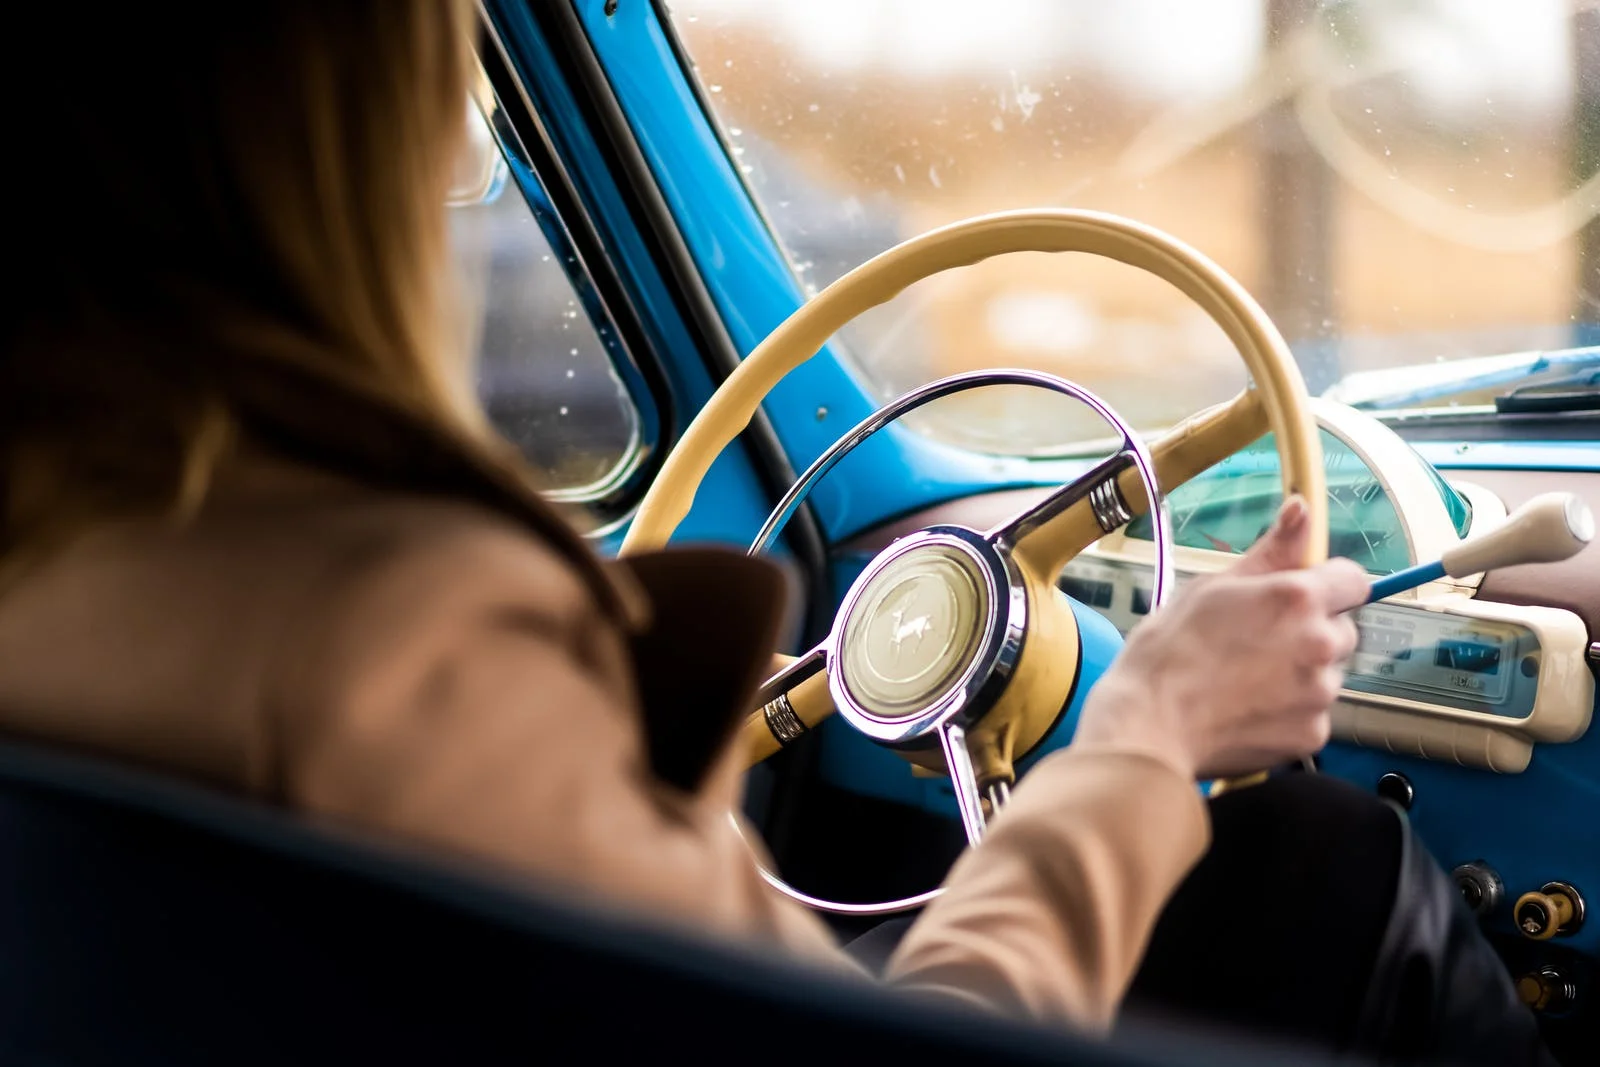 Una mujer conduciendo un vehículo. | Foto: Pexels